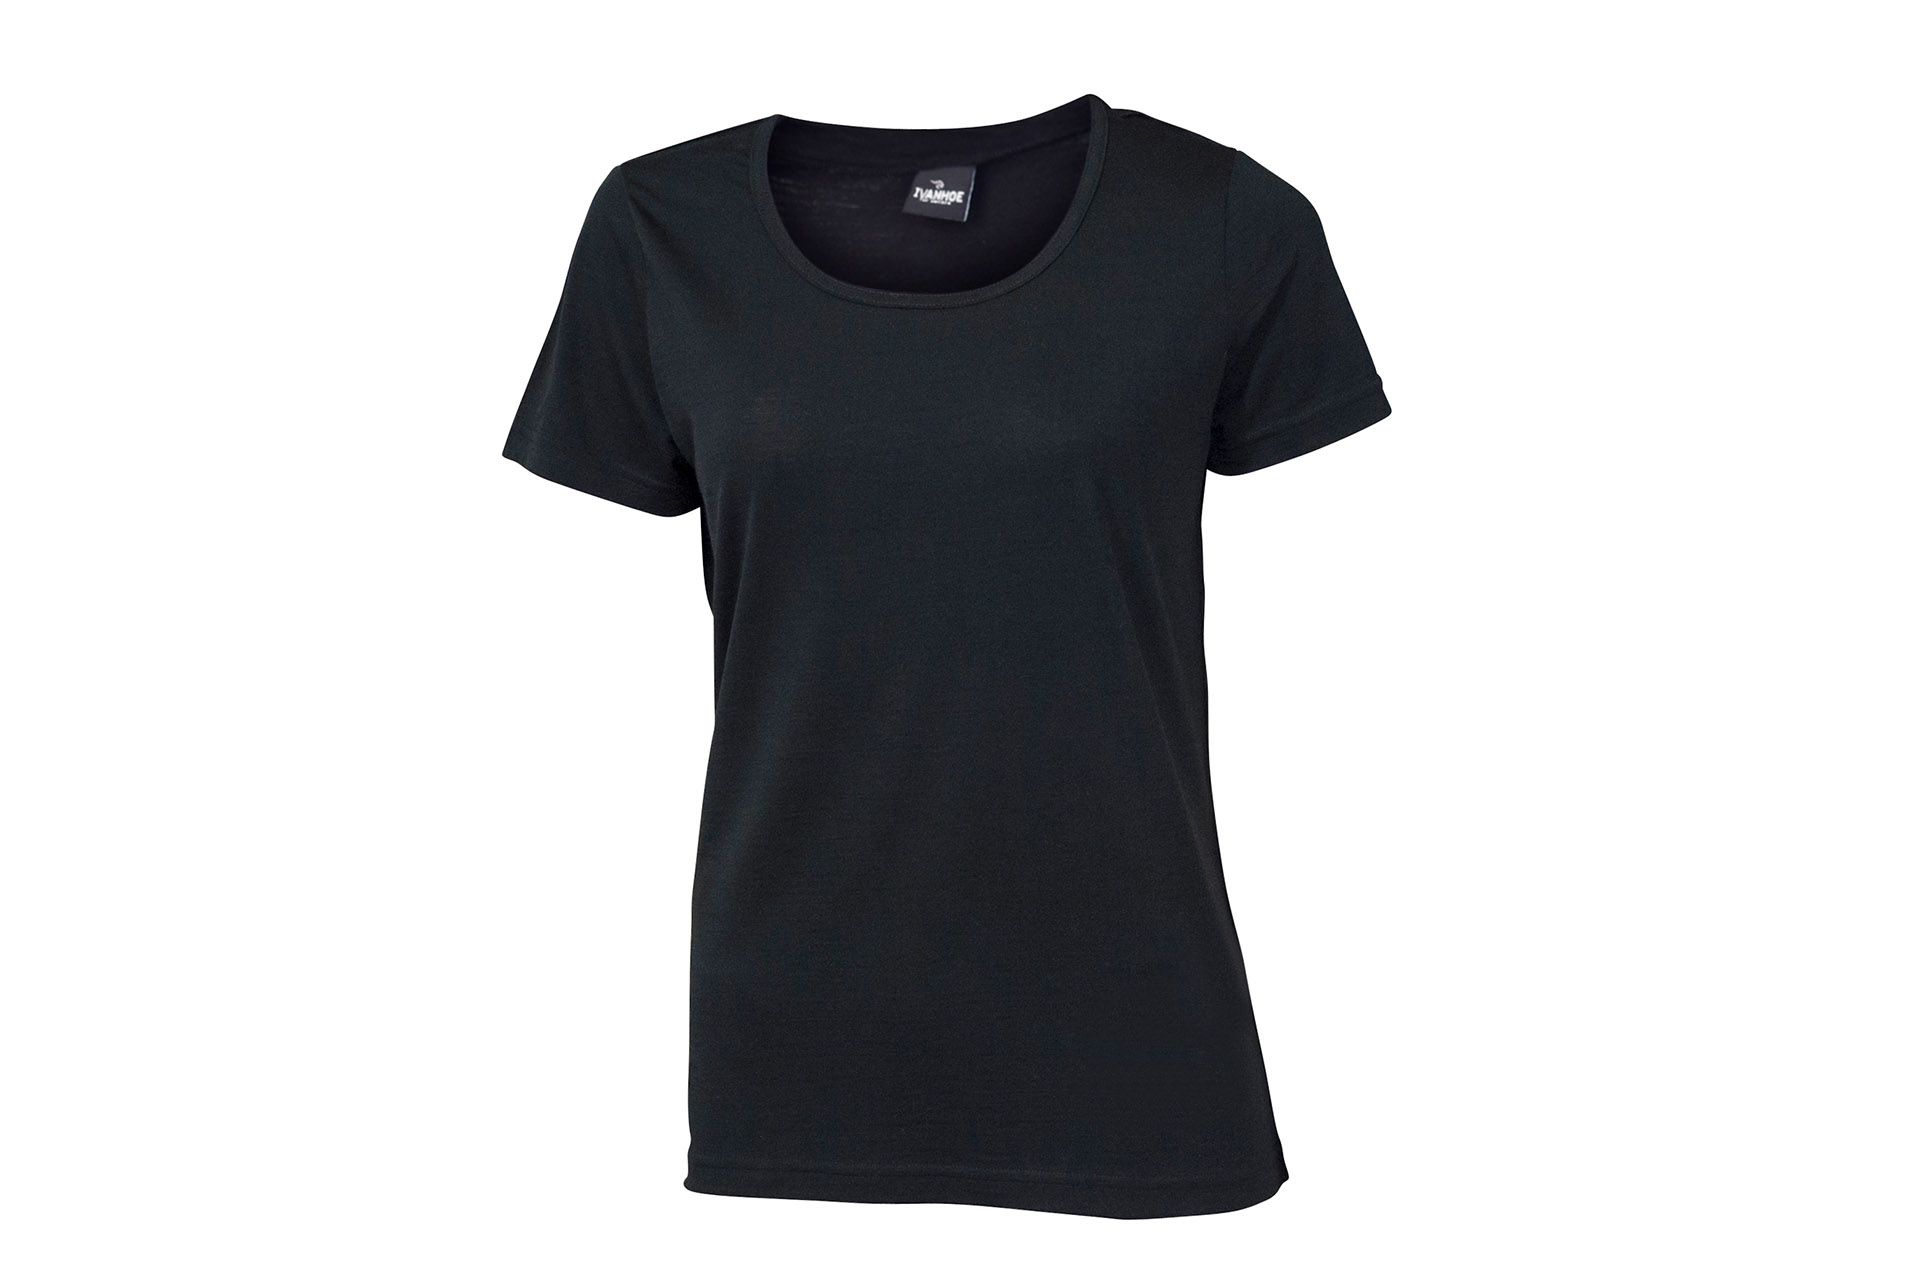 Damen-T-Shirt von IVANHOE, Modell "UW Meja" Black